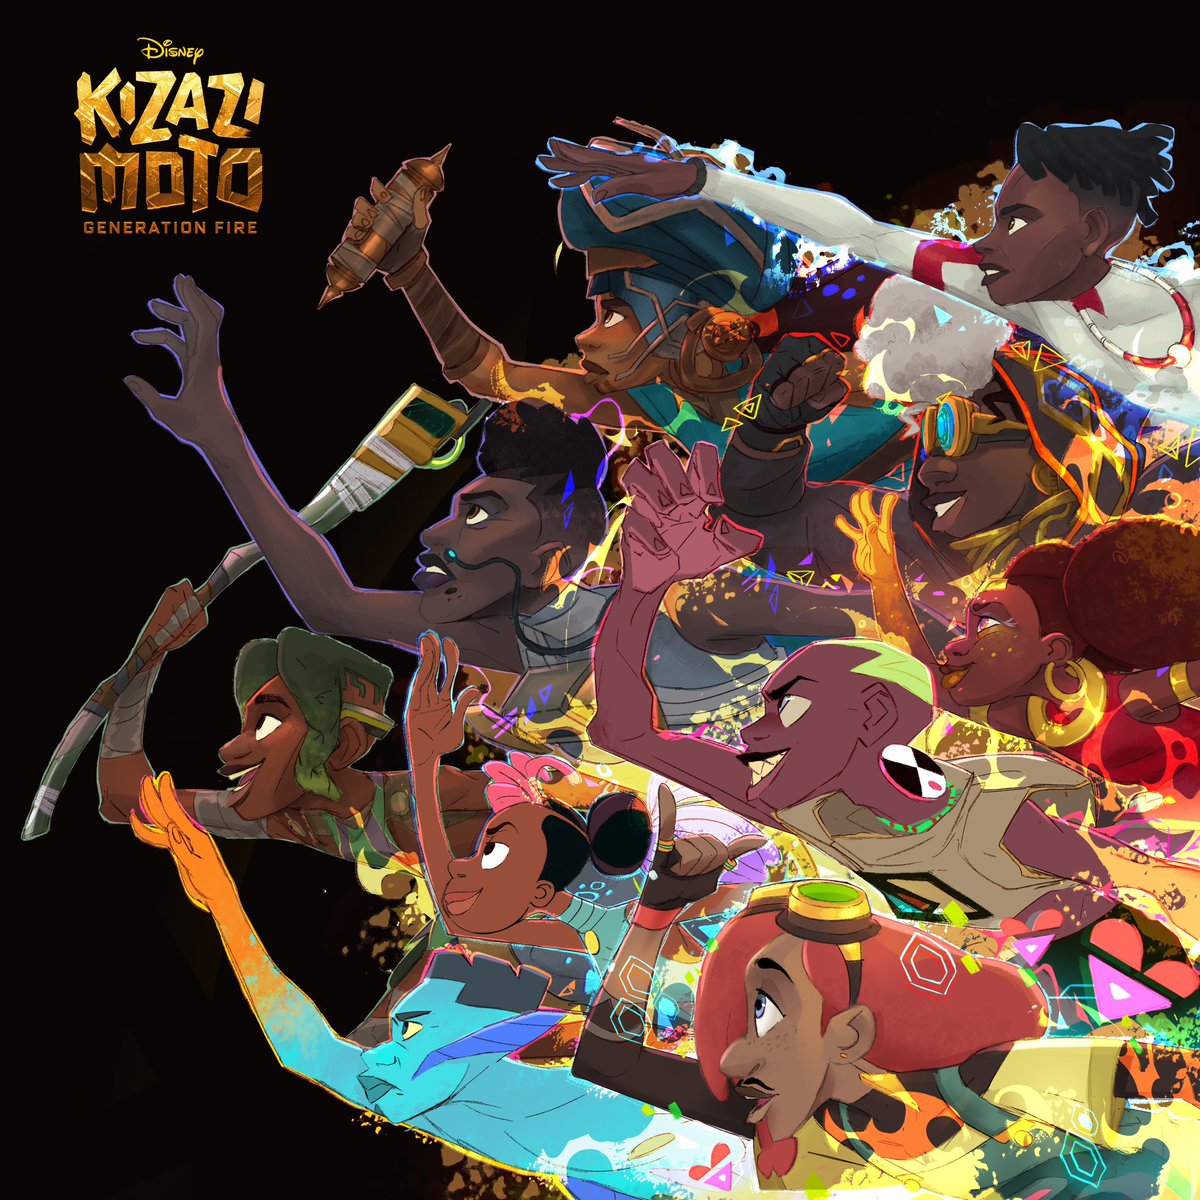 Le fait qu'il n'y ait pas du bruit autour de #KizaziMoto  me foudroie💔. Cette série est quand même une révolution dans l'histoire du cinéma d'animation des pays africains. 10 courts métrages sur le thème de la science-fiction en Afrique réalisés par des studios du continent.